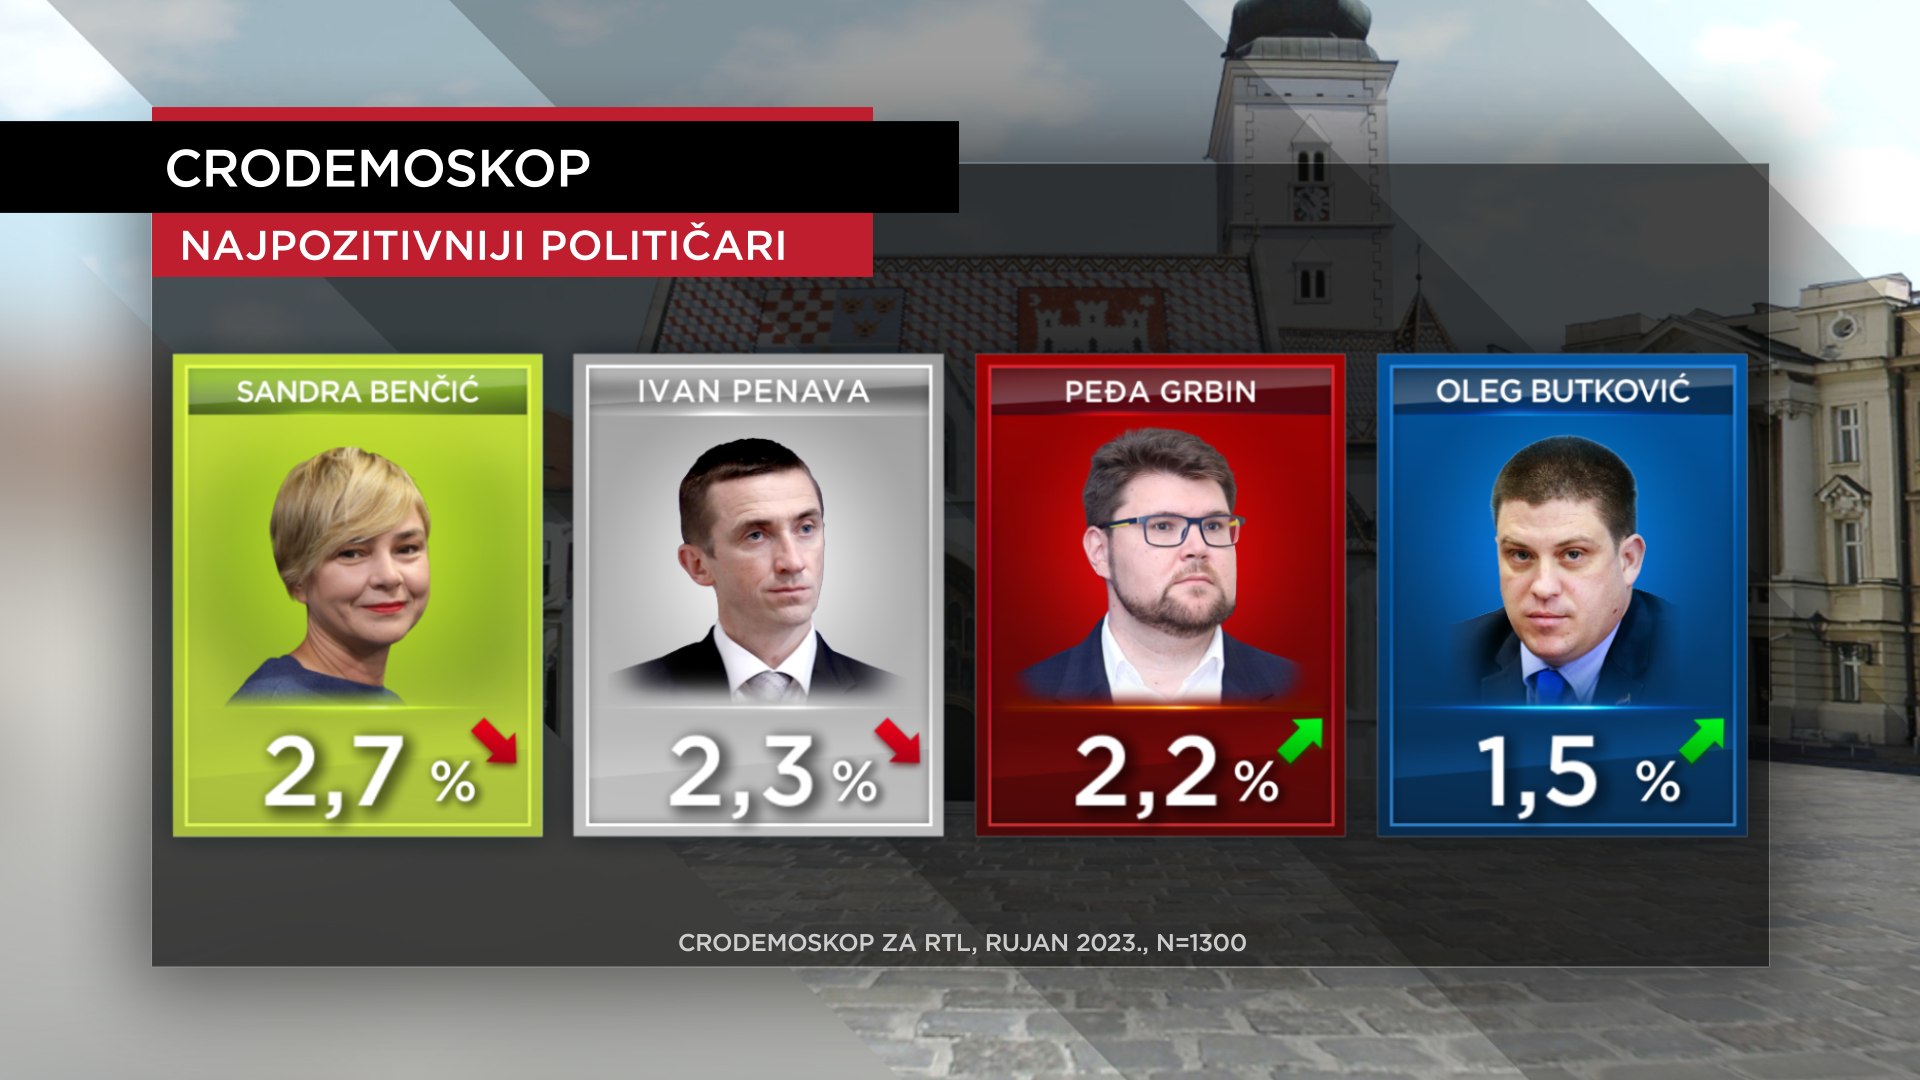 HDZ je uvjerljivo prva stranka u državi: Najpozitivniji političar je Milanović, iza njega Plenković